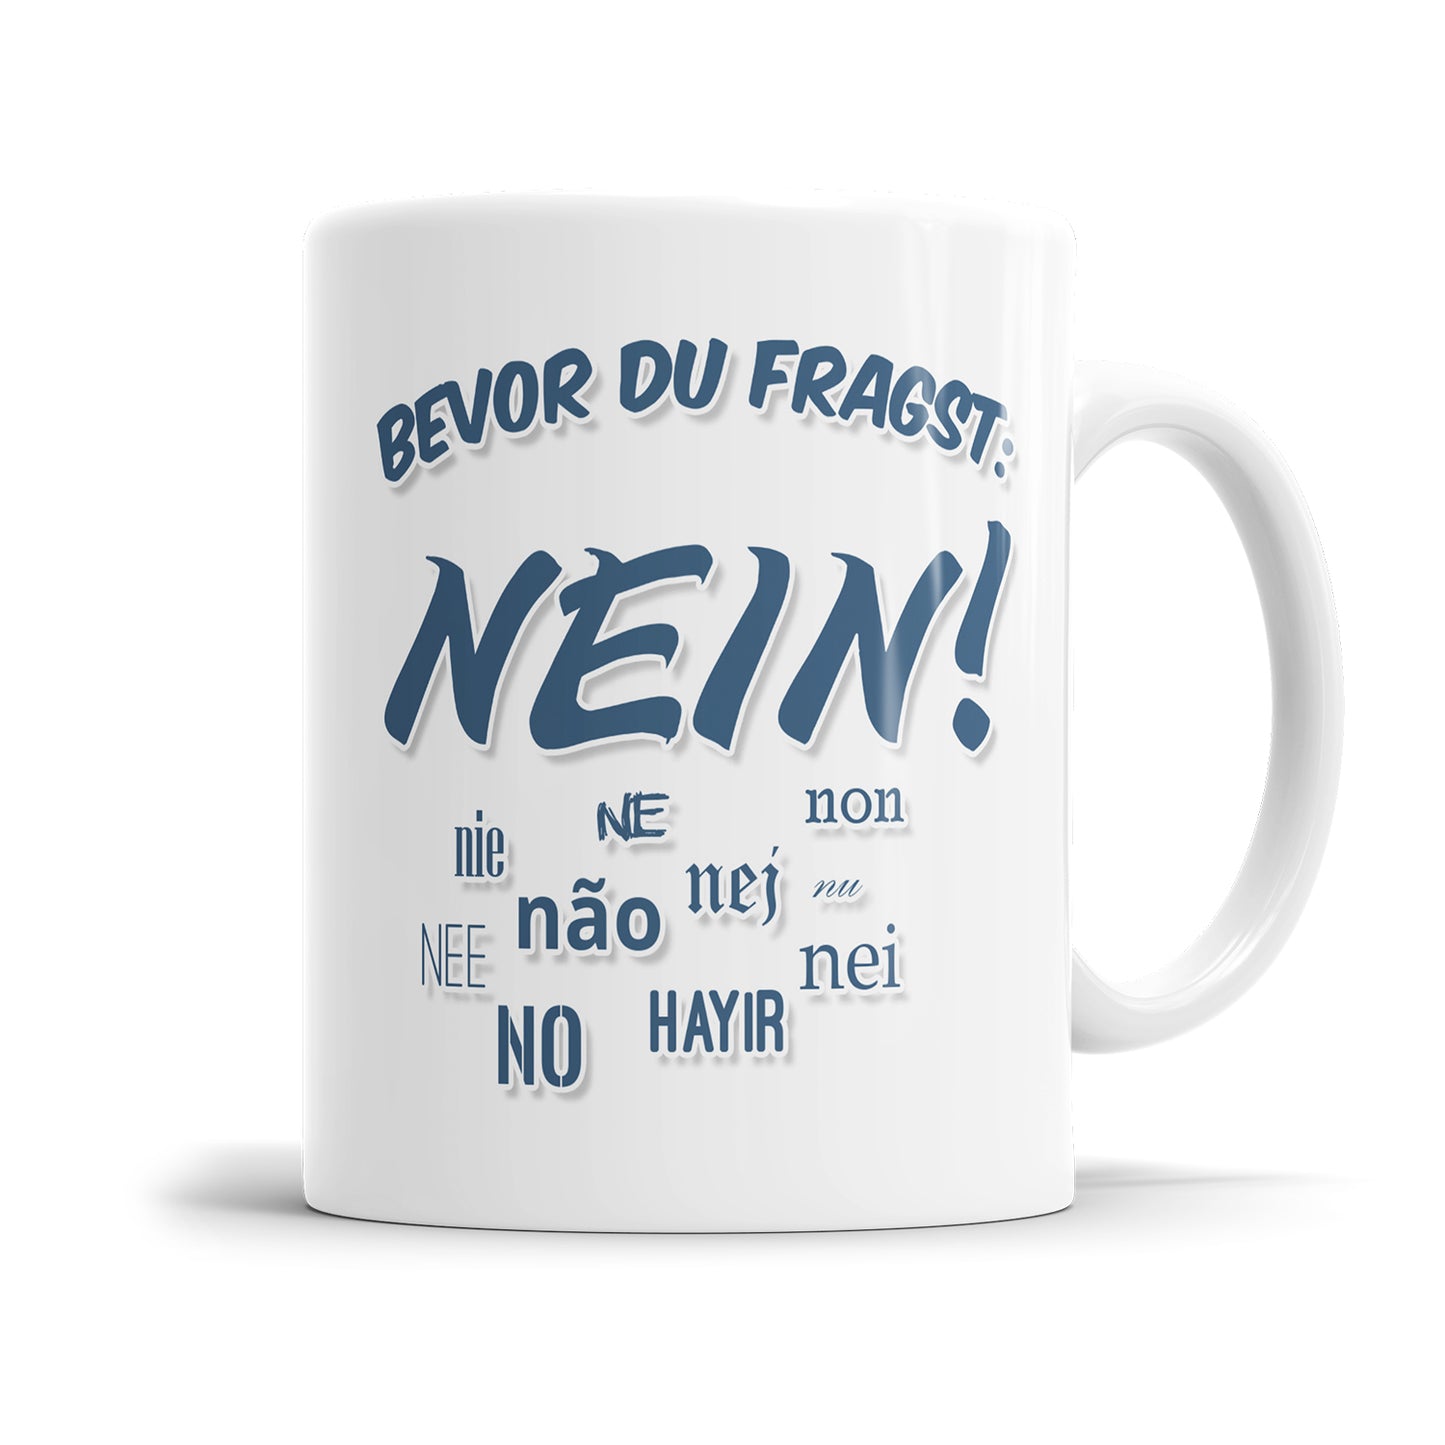 Bevor du fragst nein Tasse mit Spruch Nein in verschiedenen Sprachen Fulima